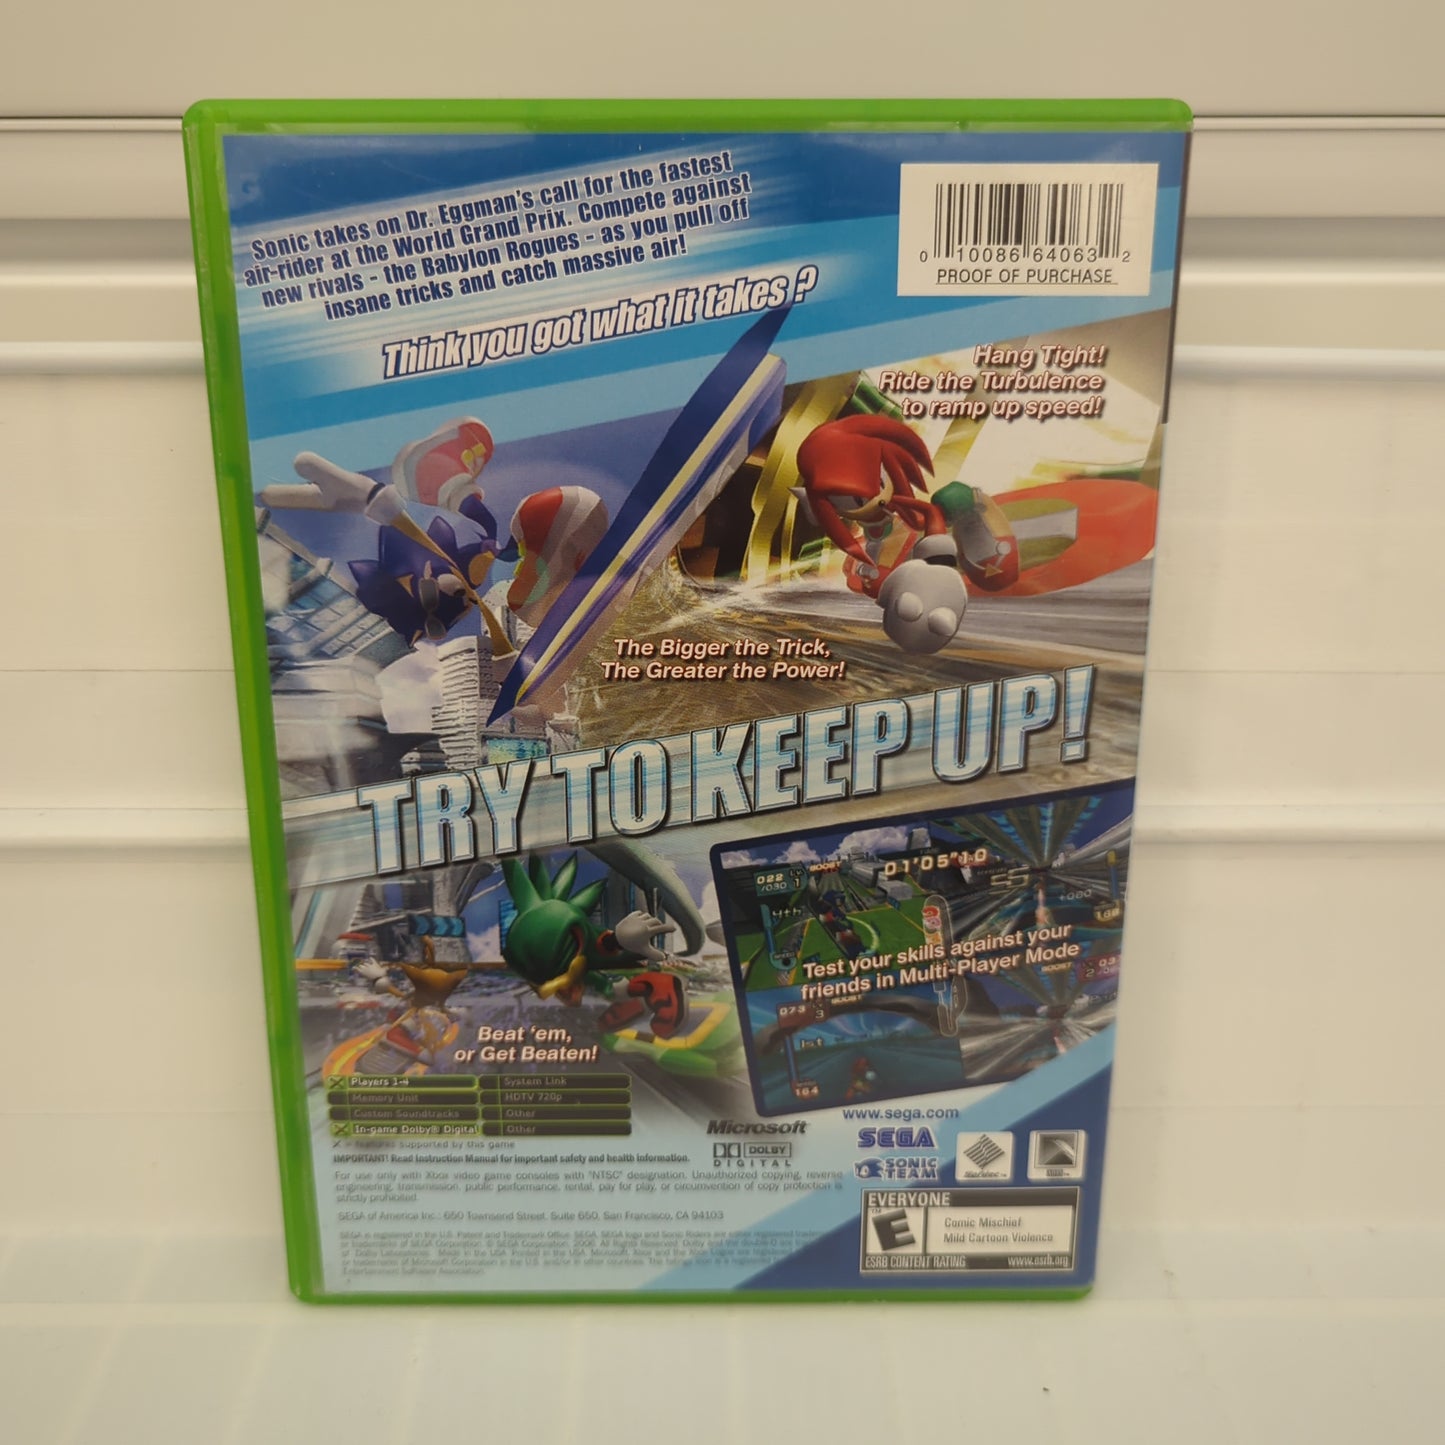 Sonic Riders - Xbox